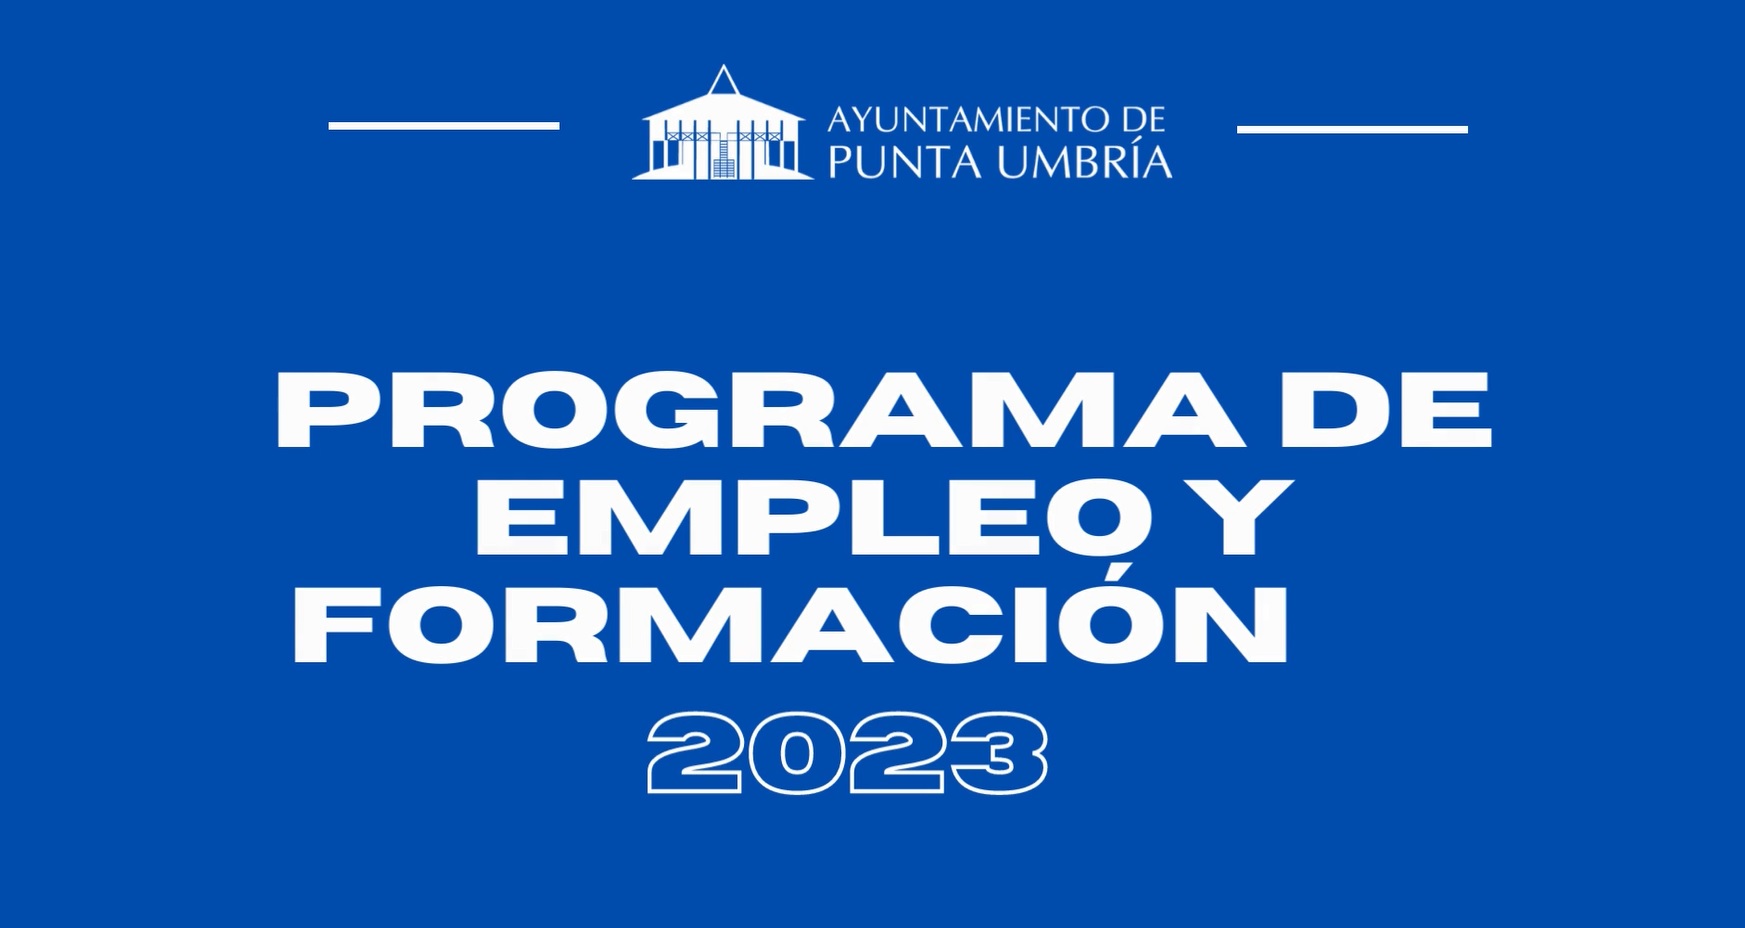 Continúa abierto el plazo para optar al Programa de Empleo y Formación 'Punta Umbría Luz' promovido por el Ayuntamiento puntaumbrieño